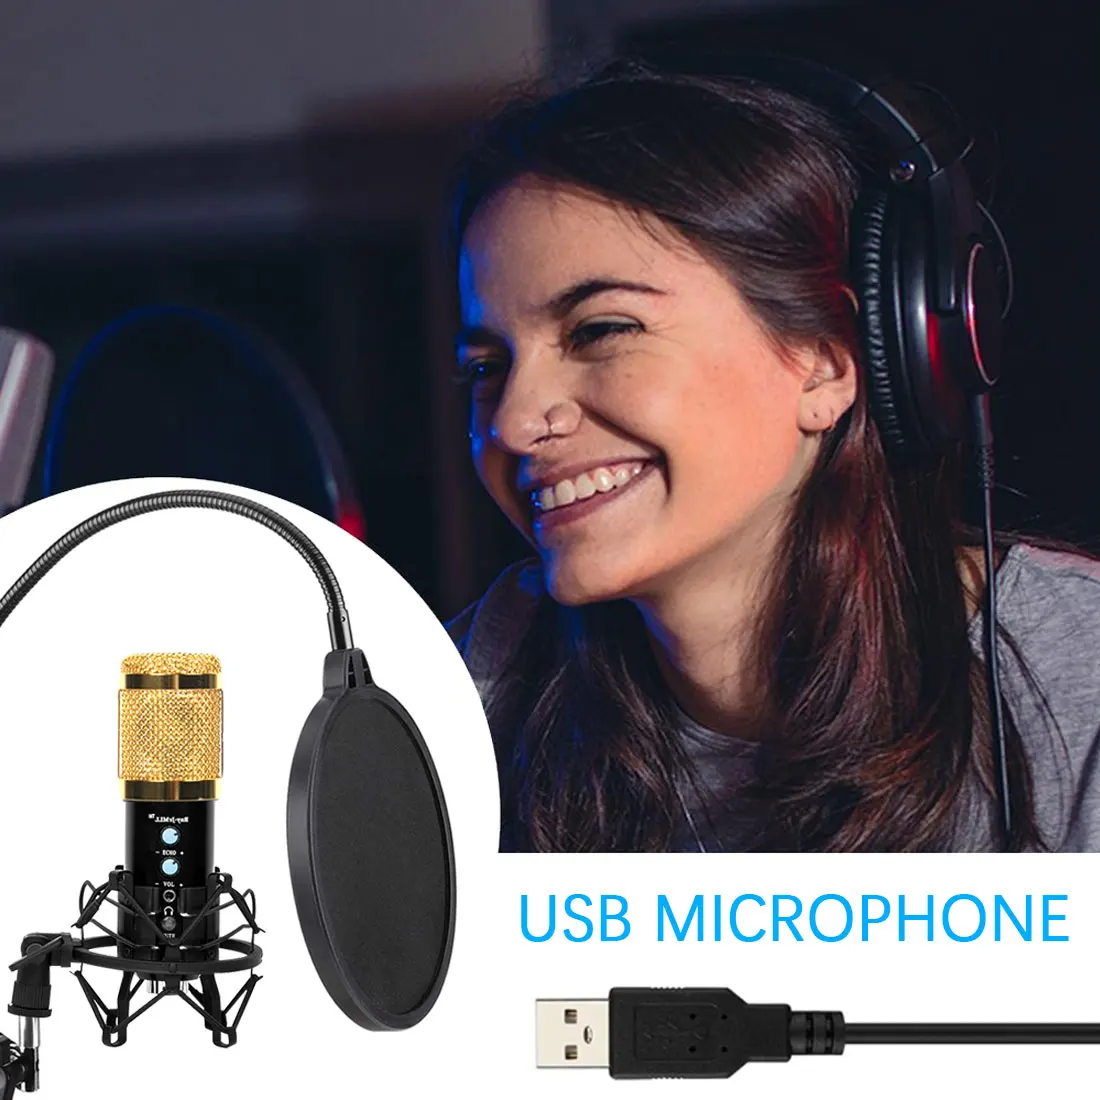 

Набор микрофонов для студийной записи Конденсатор BM 858 USB компьютерный микрофон с регулируемой подставкой для рук ударное крепление для ...